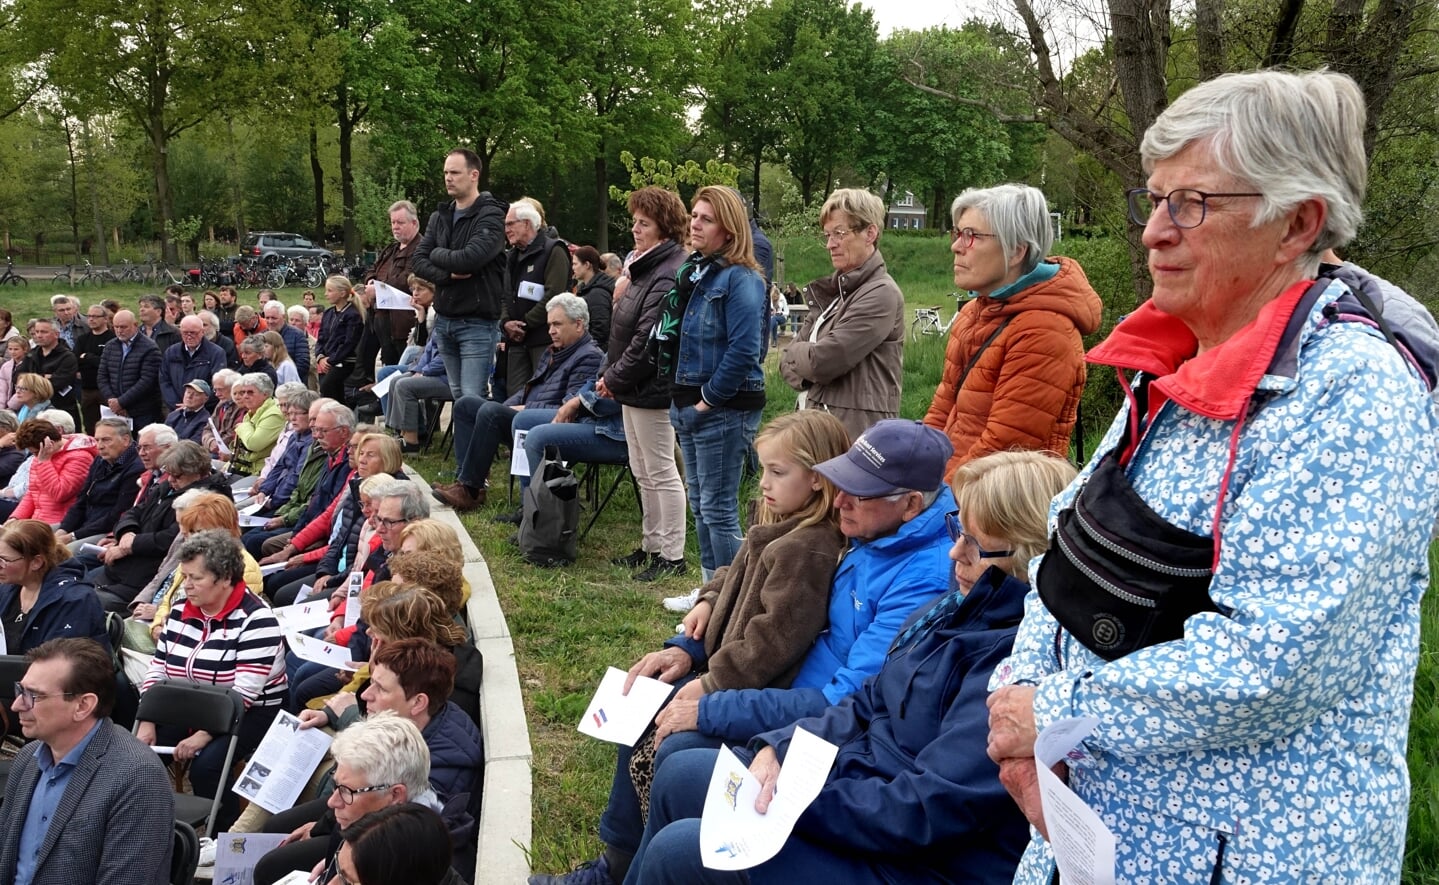 De herdenking van de oorlogsslachtoffers in Esch trok woensdagavond veel geïnteresseerden naar 't Haventje. Zij zagen naast de burgemeester ook een aantal nabestaanden de verhalen van hun overleden familieleden vertellen. 